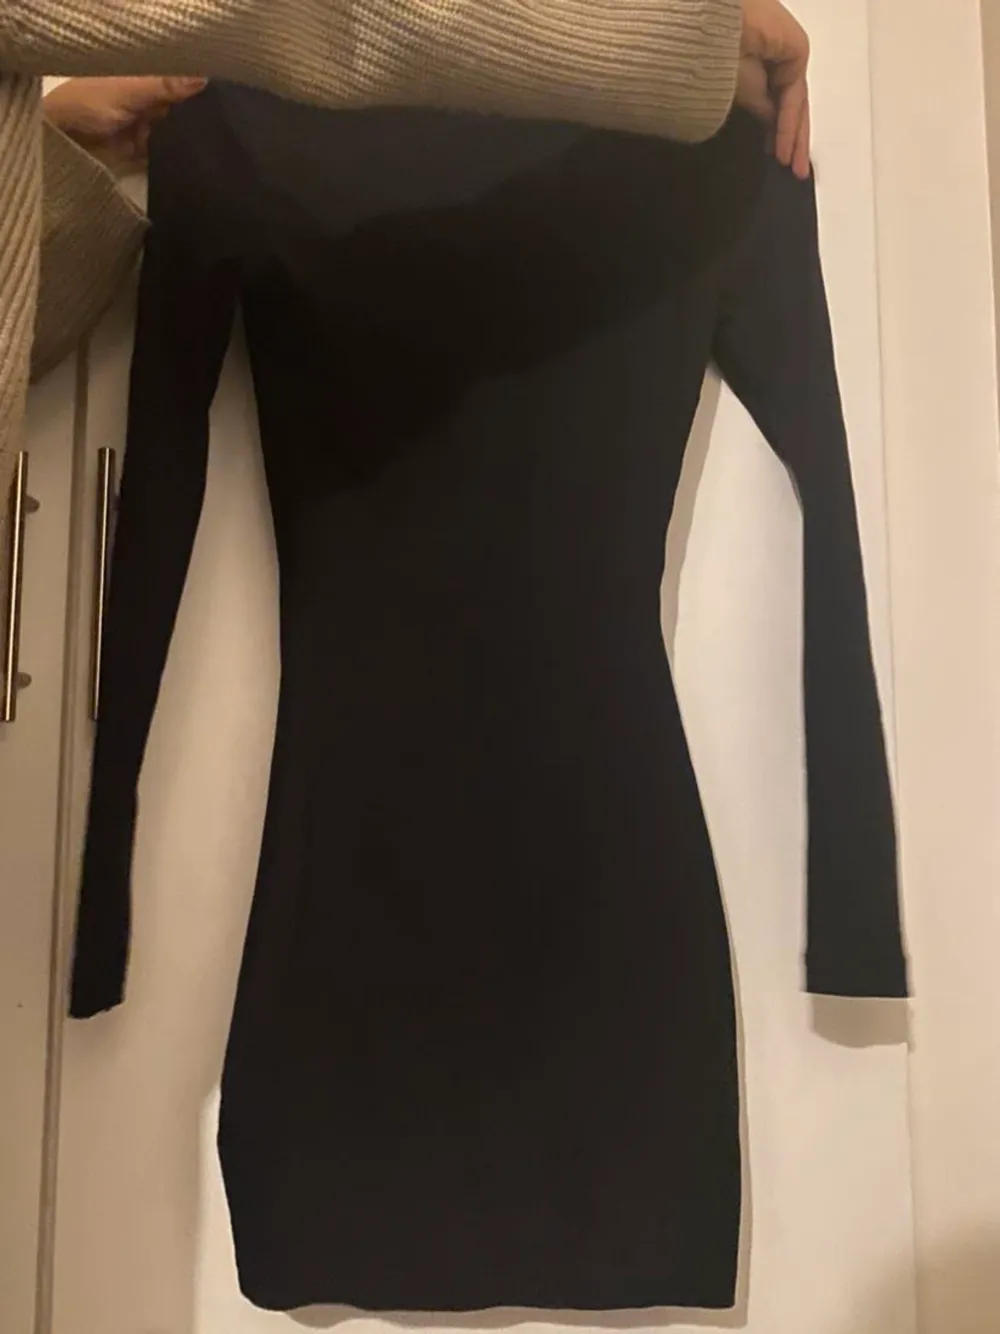 En svart klänning i storlek S. Den är ribbad och väldigt stretchig. Använd 1 gång. I jättefint skick. Klänningar.